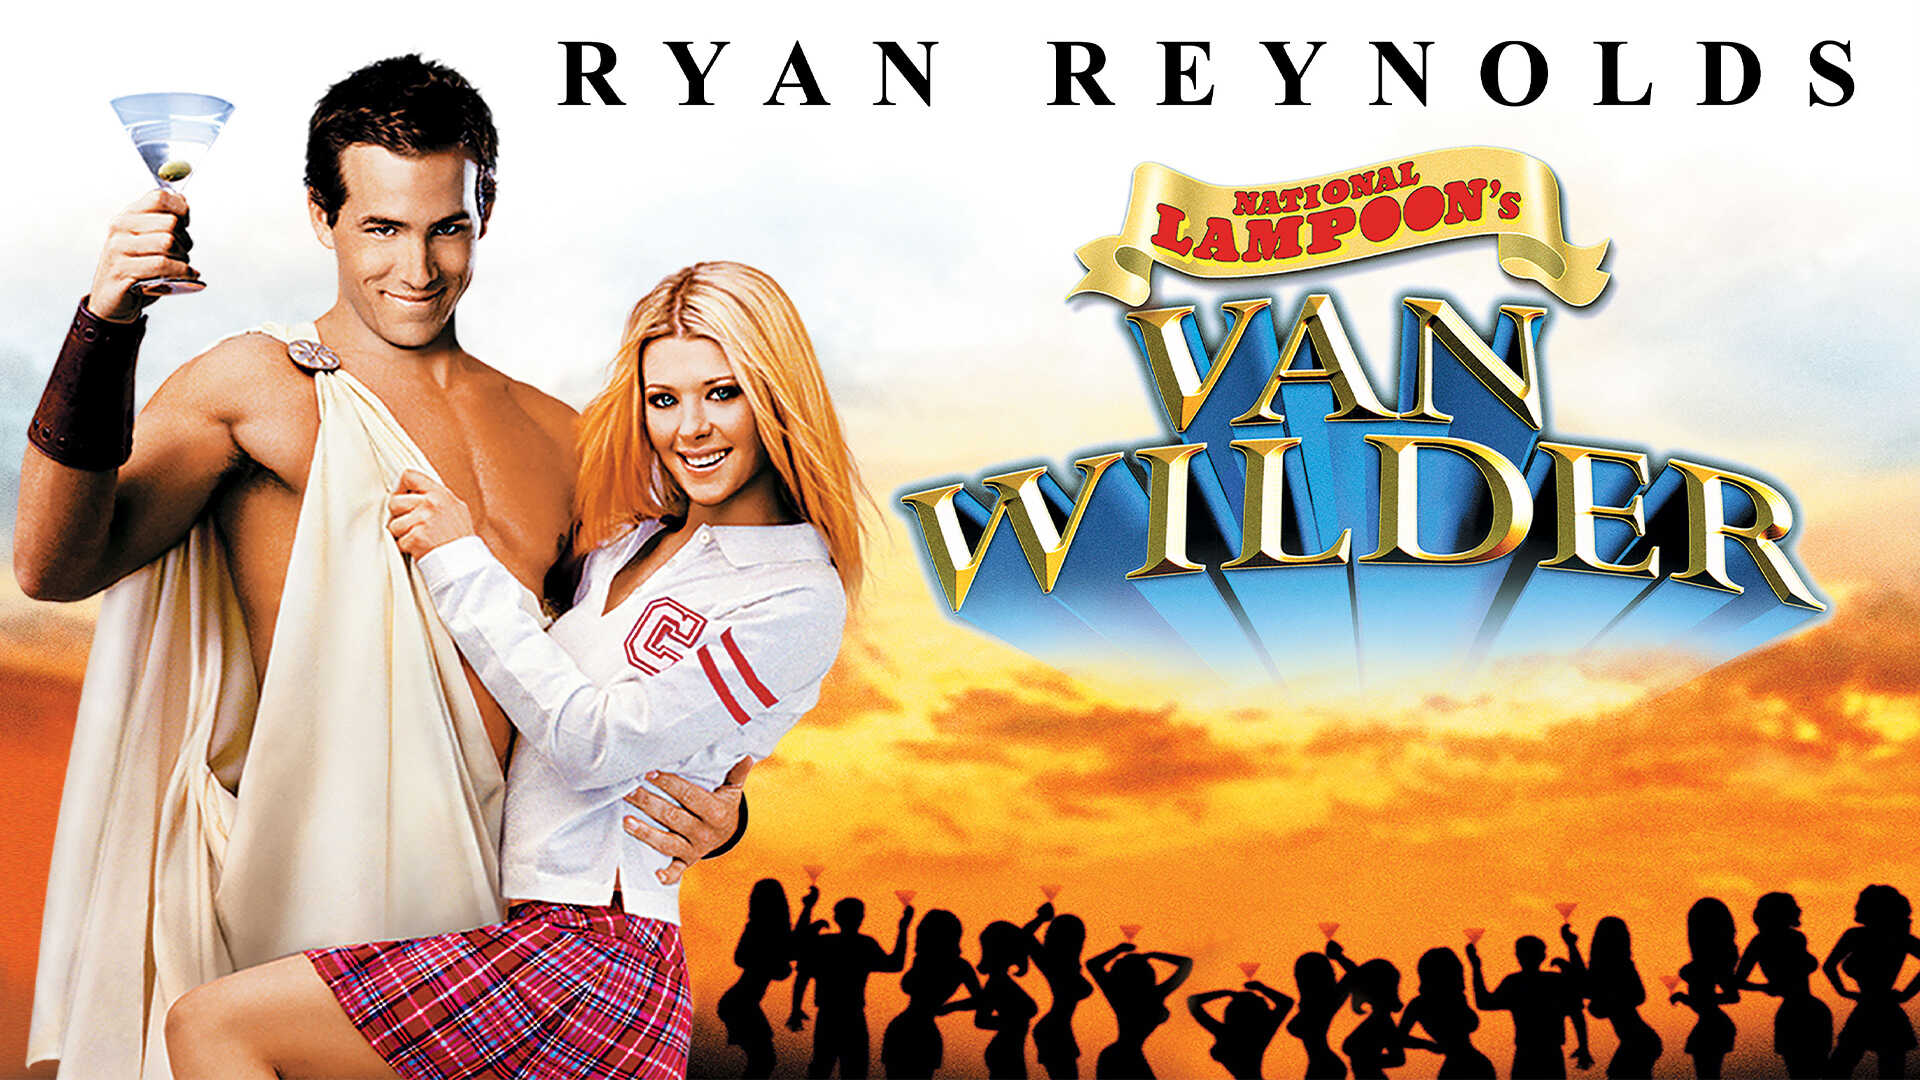 Van Wild. Party van. Van Wilder collection DVD Cover. Van Wilder collection DVD Covert. Блондинка в шоколаде 2006